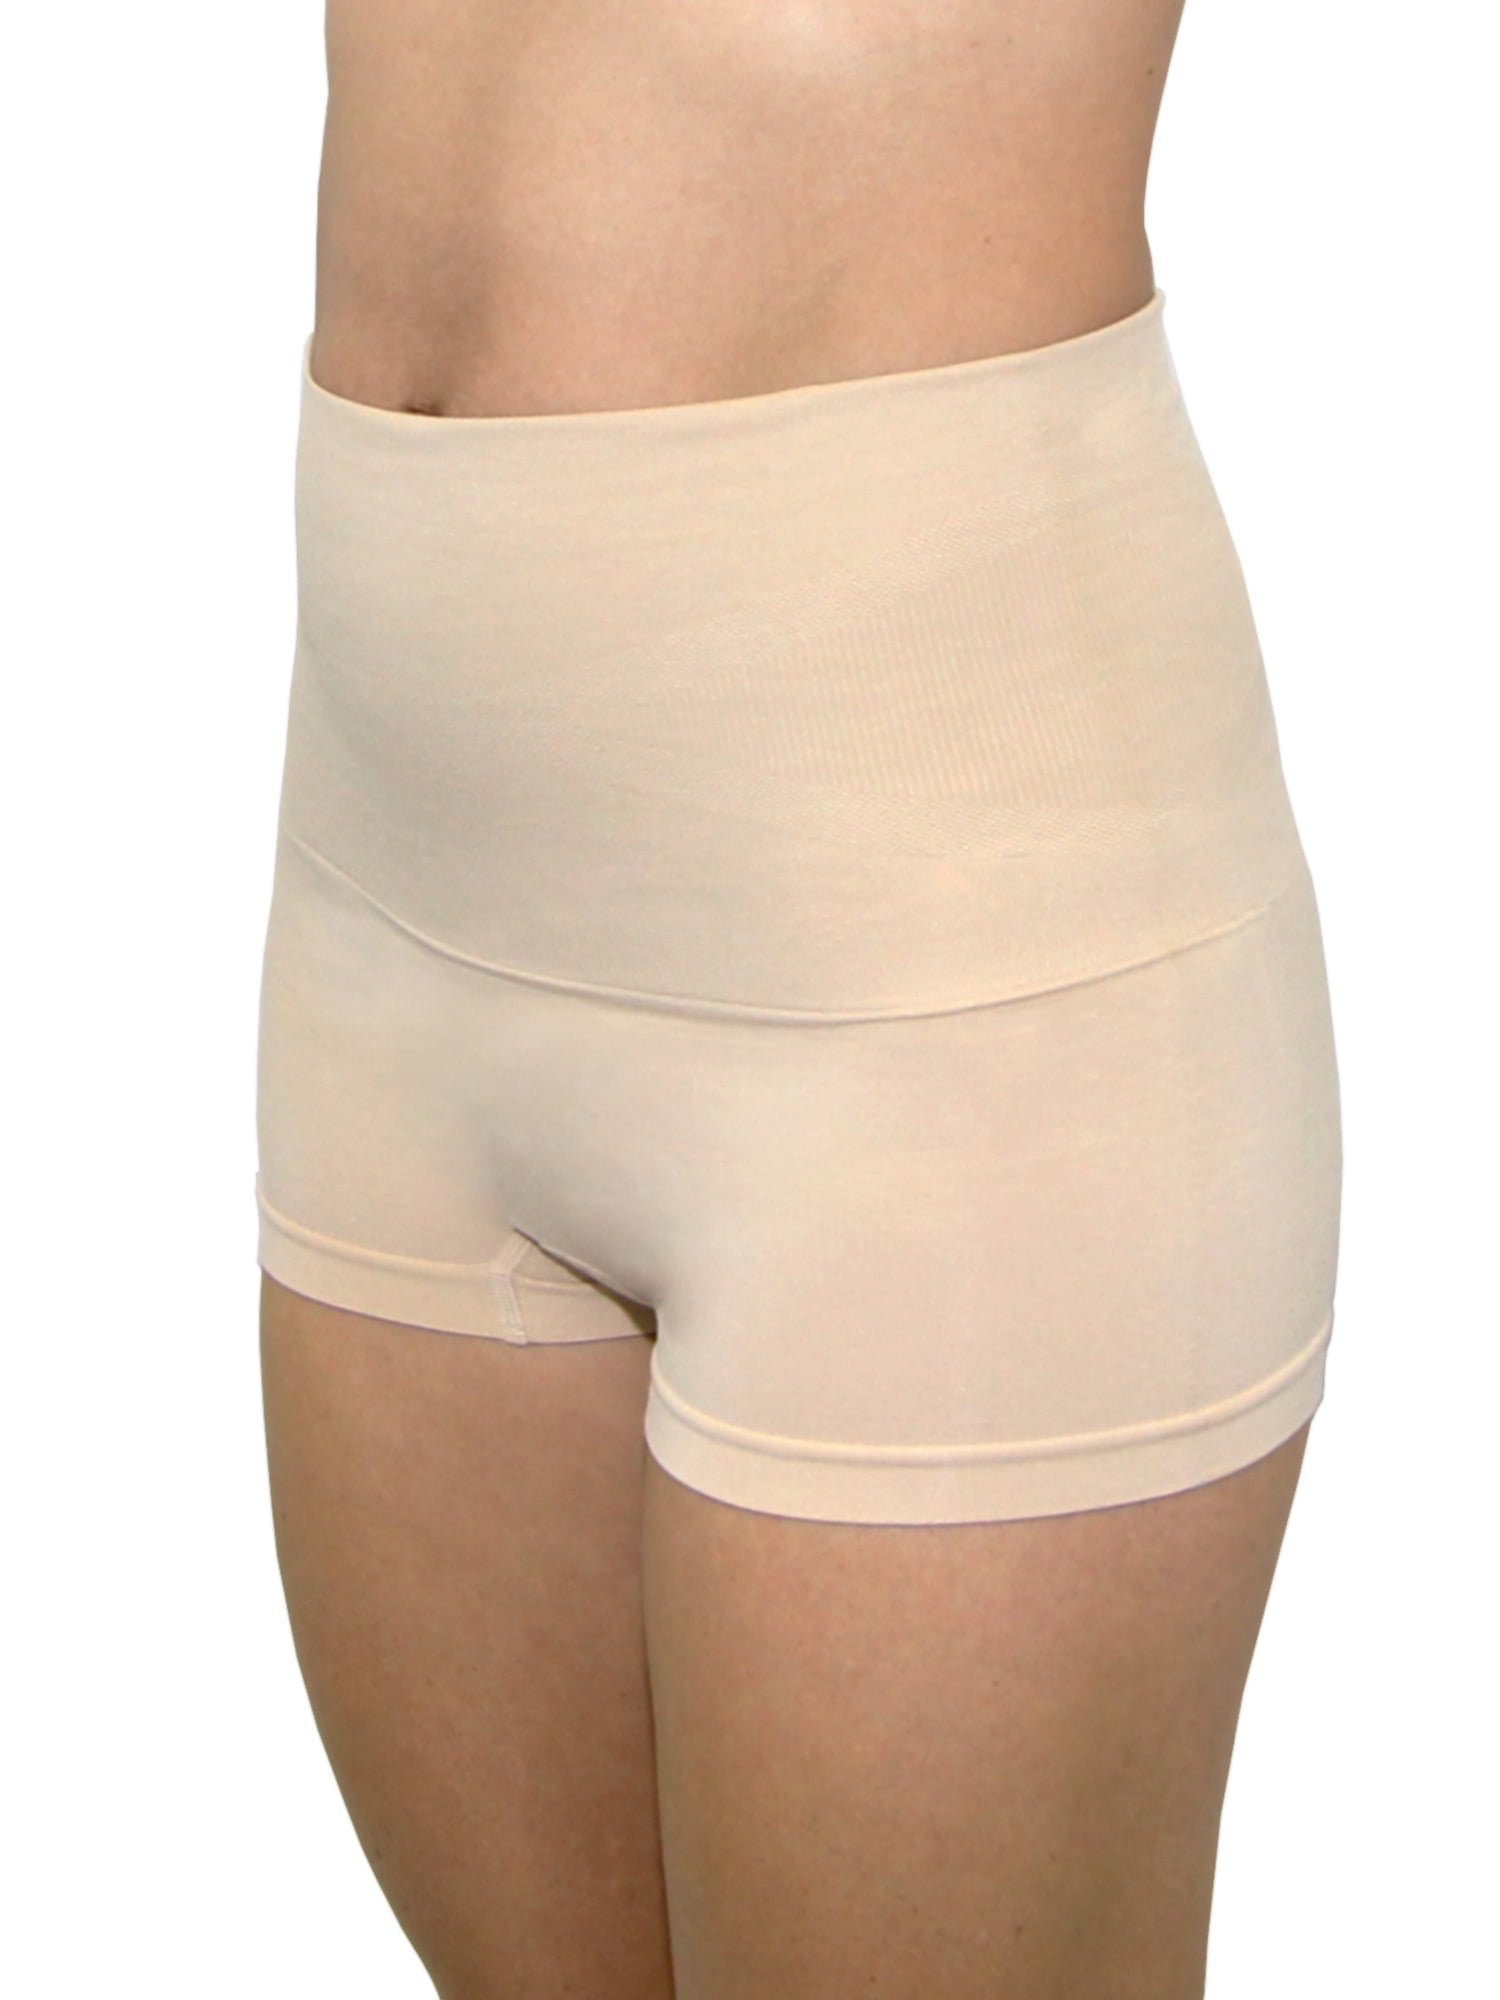 MD Womens Compression Underwear High Waist Boyshort Panties